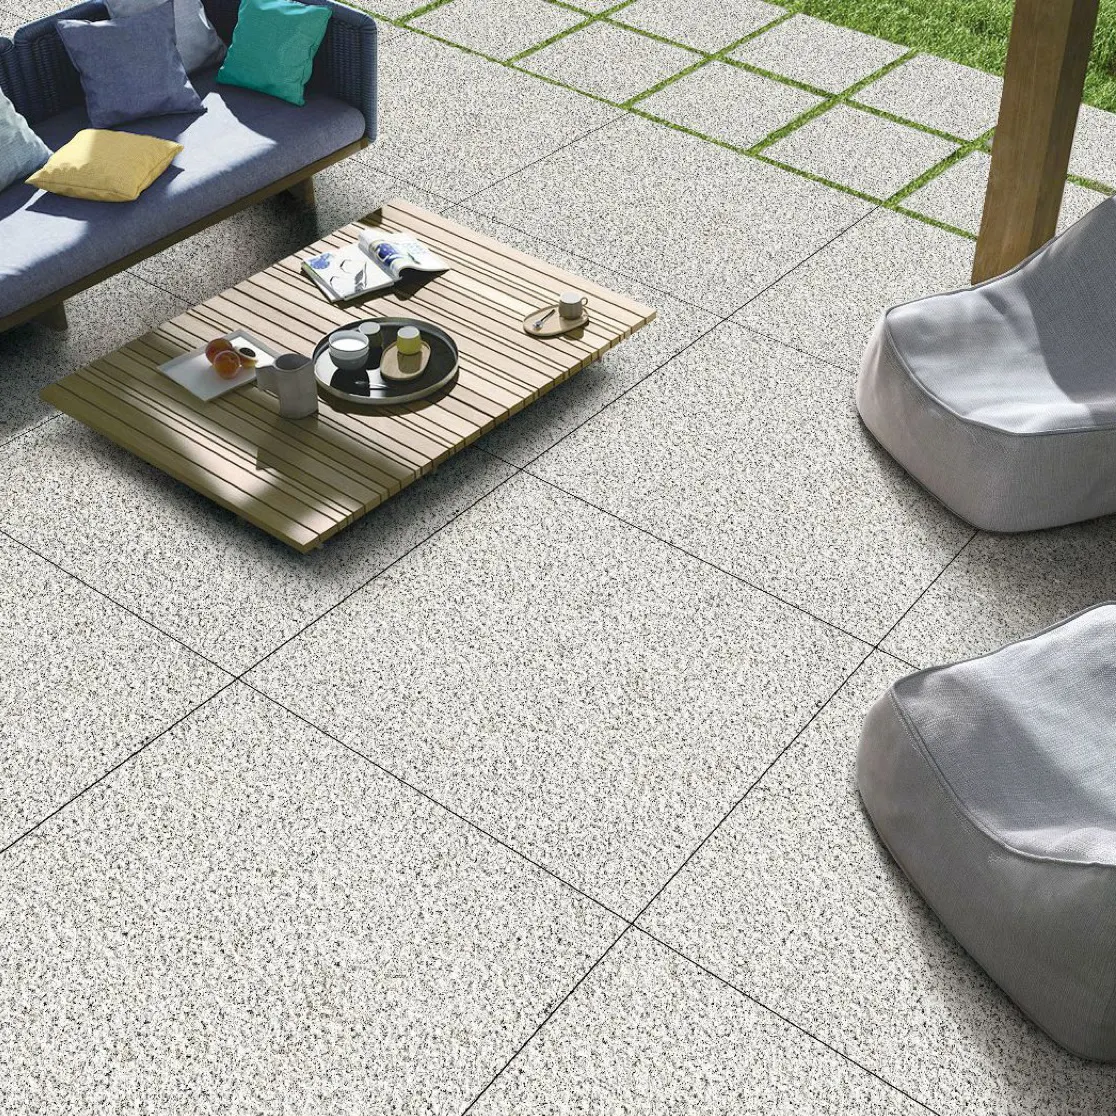 Oem Service Pathway Driveway Natural Stone Floor Tiles 60 × 60 Car Parking Granite Tiles Floor Outdoor